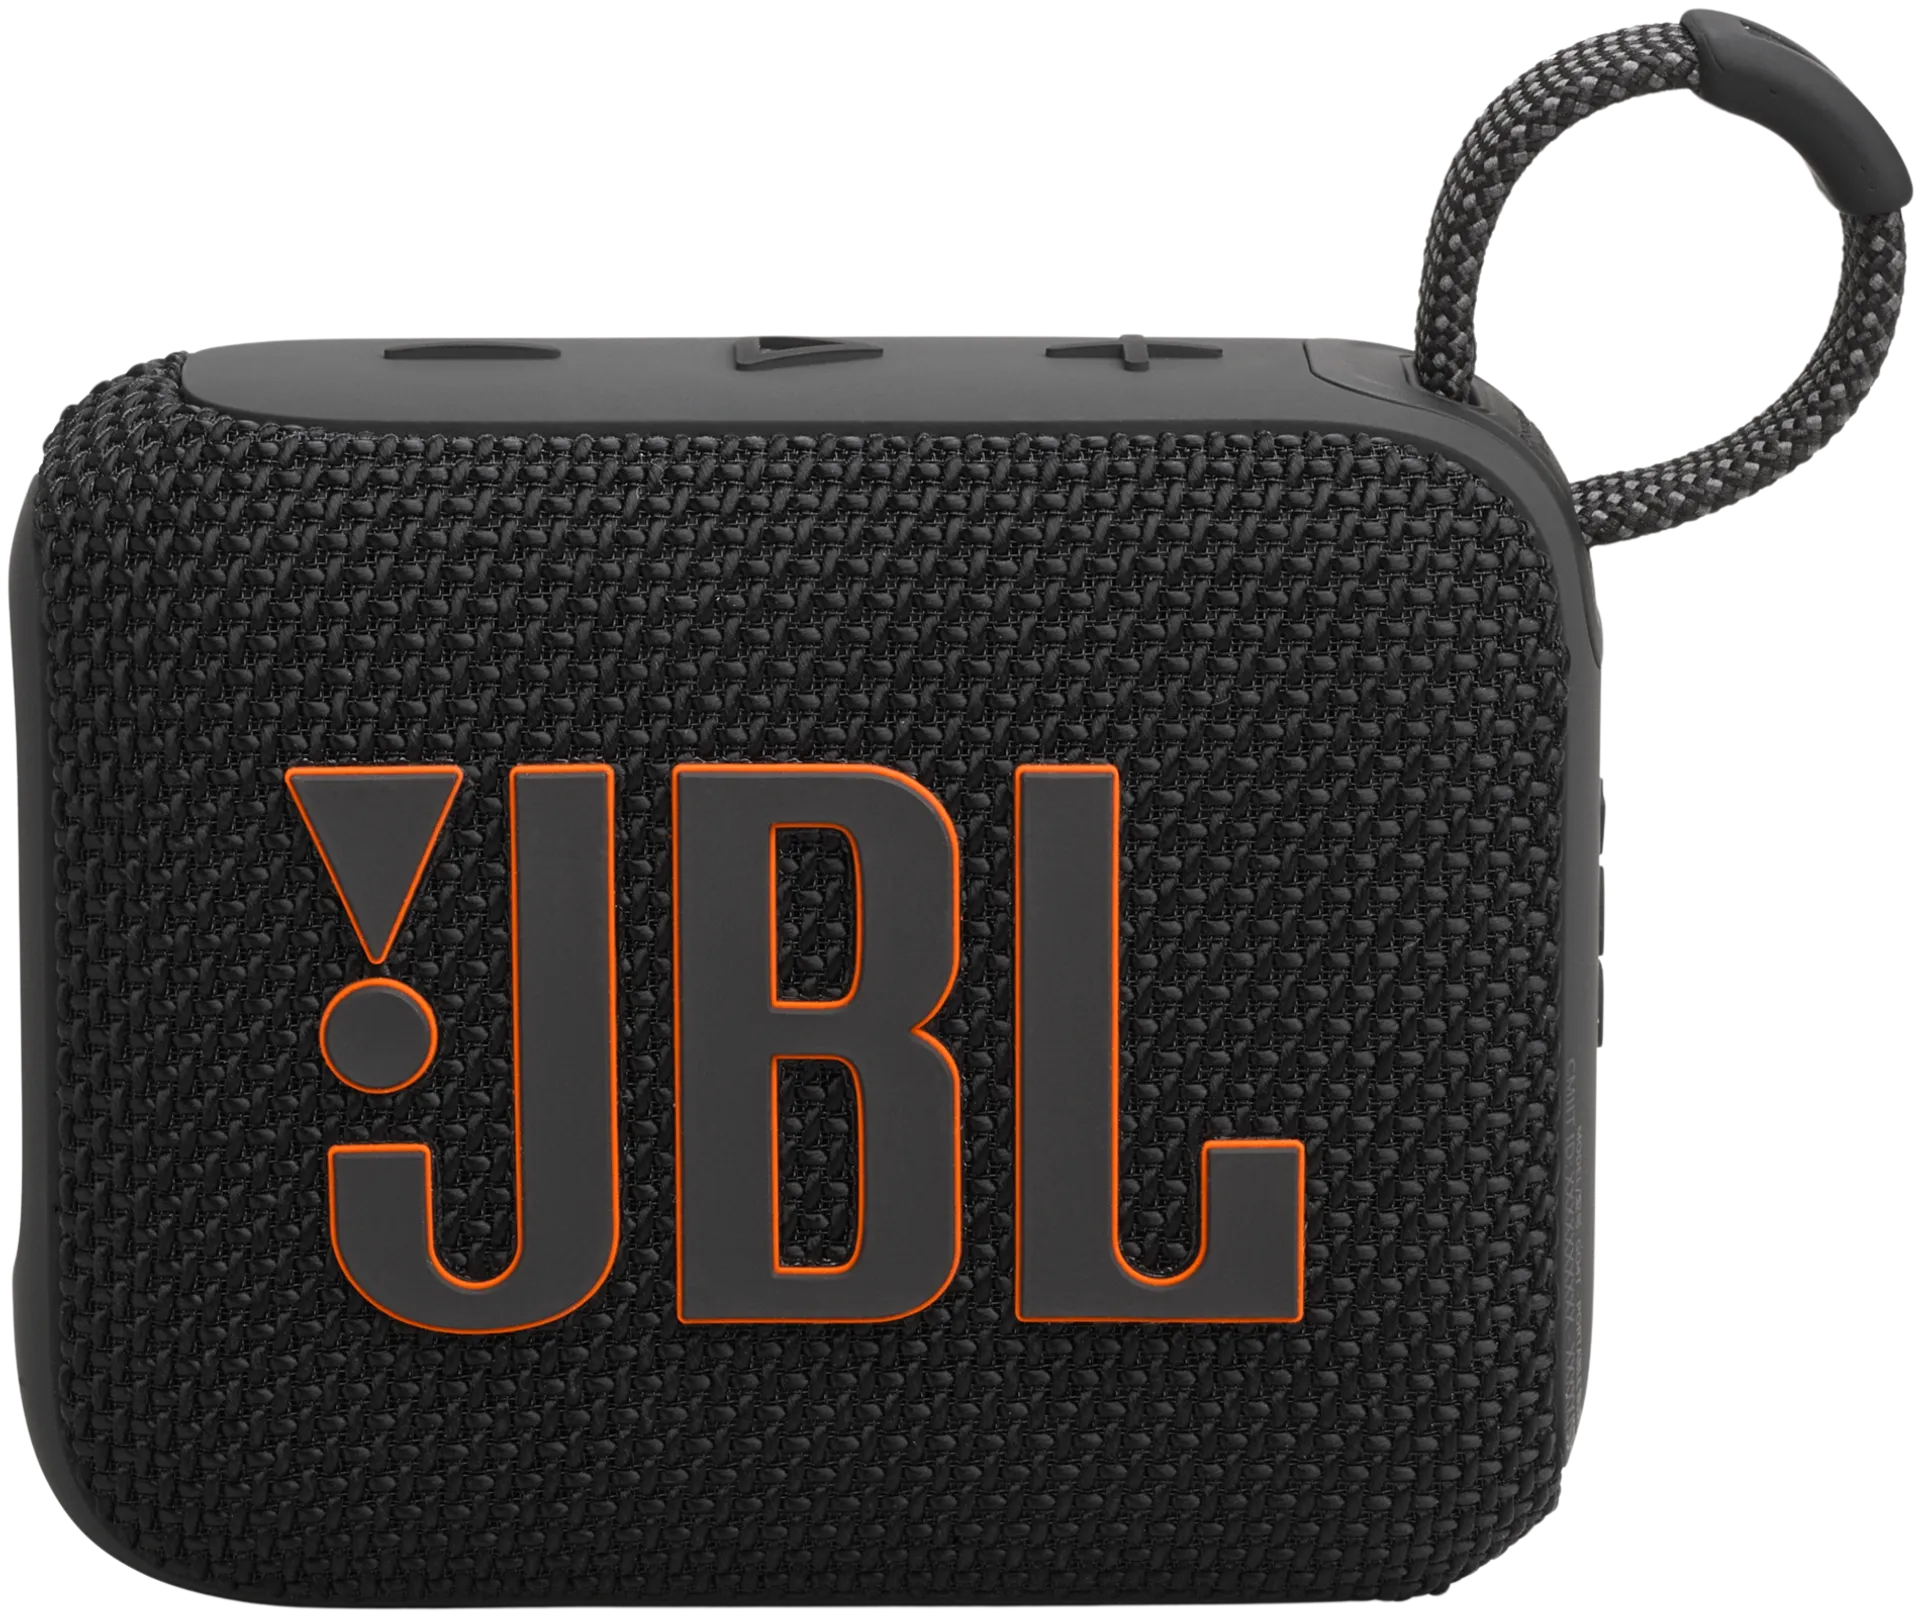 JBL Bluetooth kaiutin Go 4 musta - 2